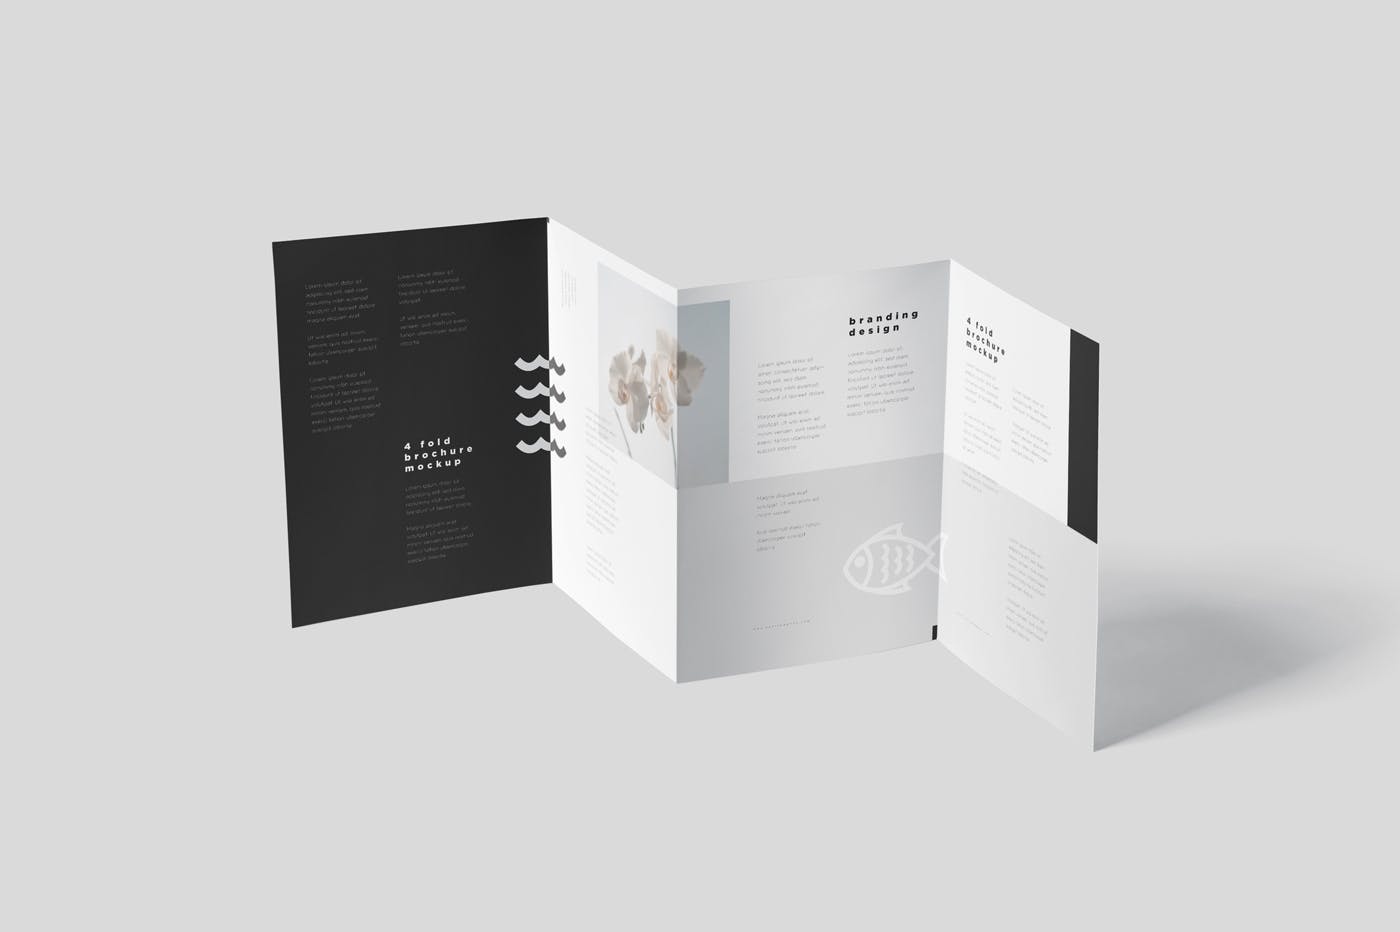 多尺寸四折页宣传册印刷效果图样机模板 4-Fold Brochure Mockup Set – Din A4 A5 A6插图4